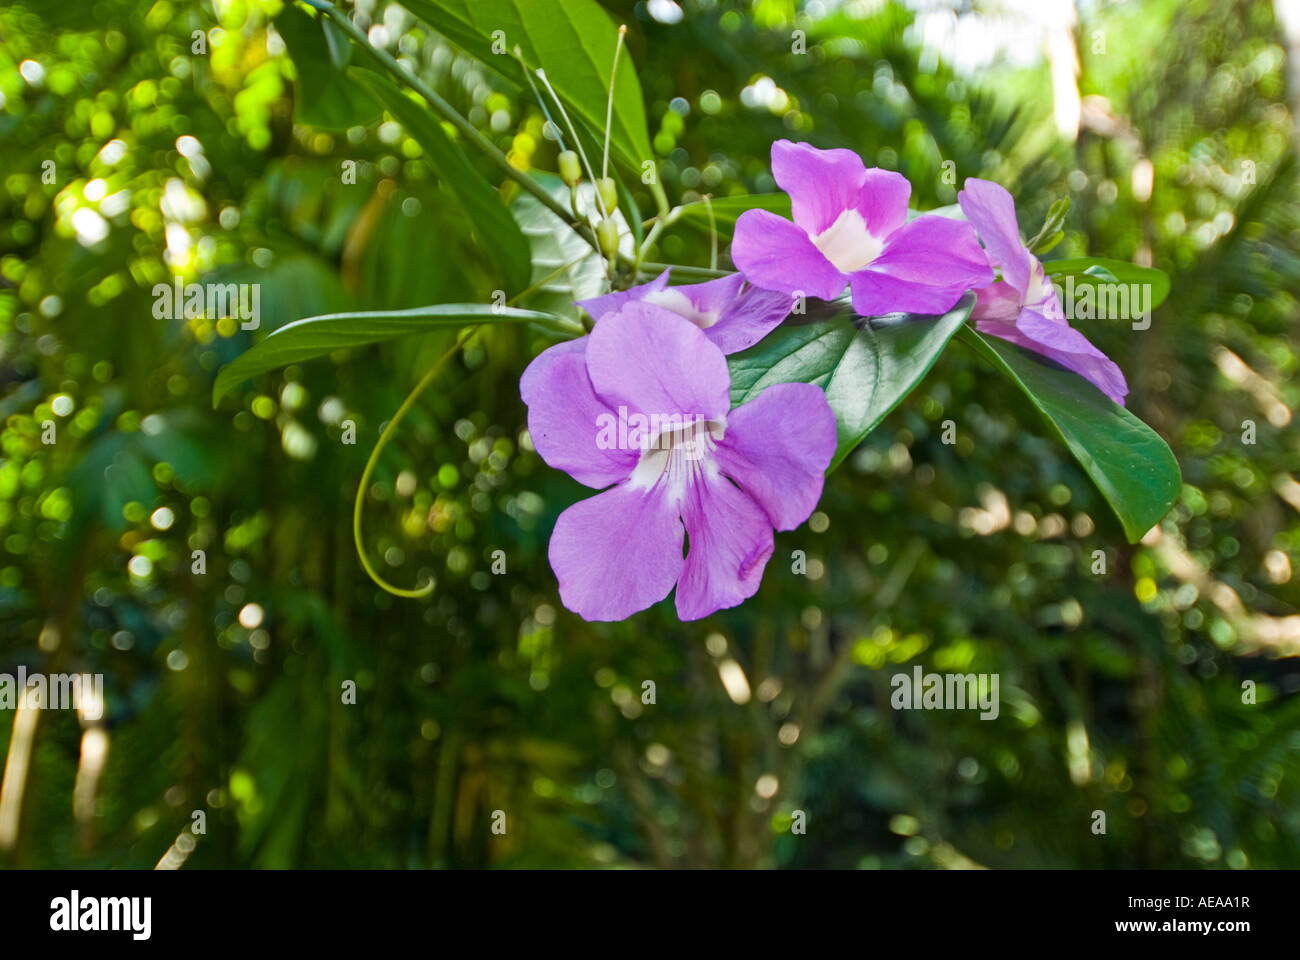 Lila Lilas bleu violet fleur fleur plante îles Fidji Au sud de la mer de Southsea forêt forêt sauvage sauvage du Pacifique Banque D'Images